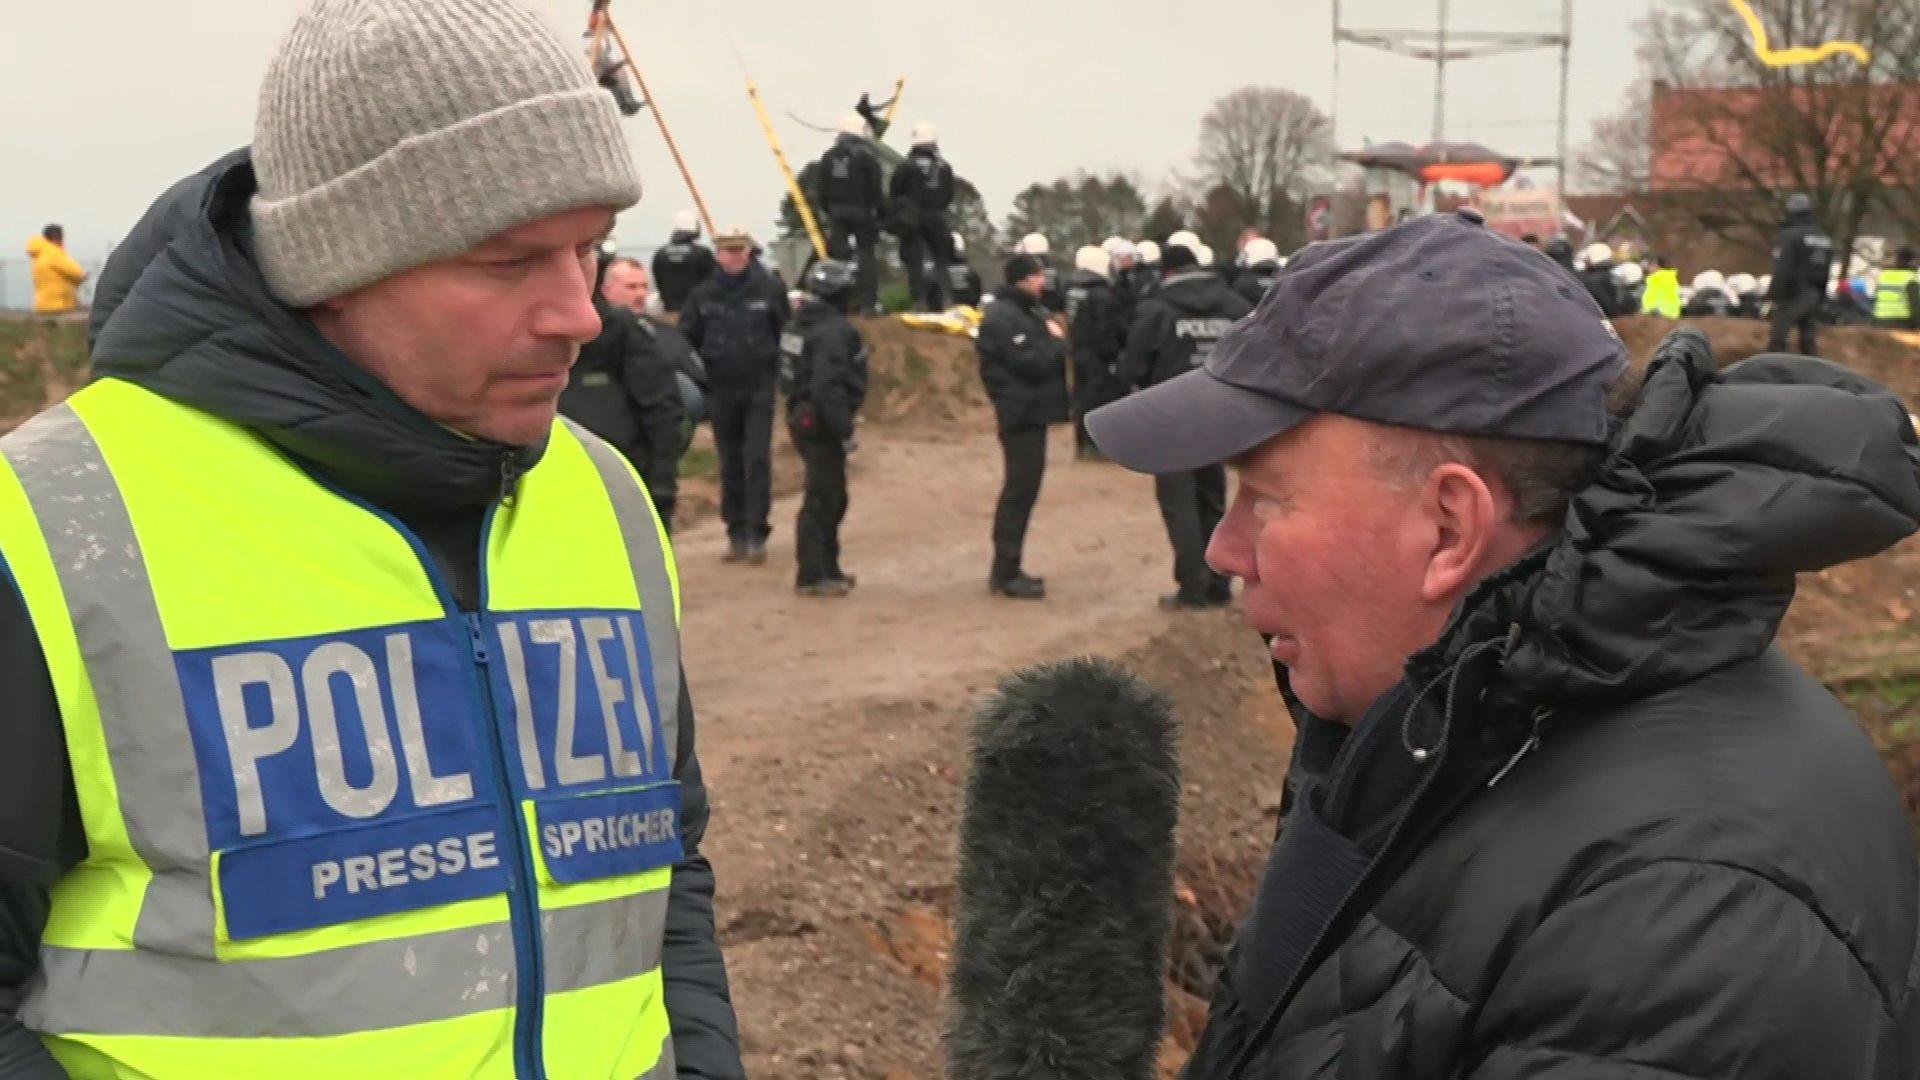 Polizei in Lützerath: „Alles unter Kontrolle" Chaos im Dorf